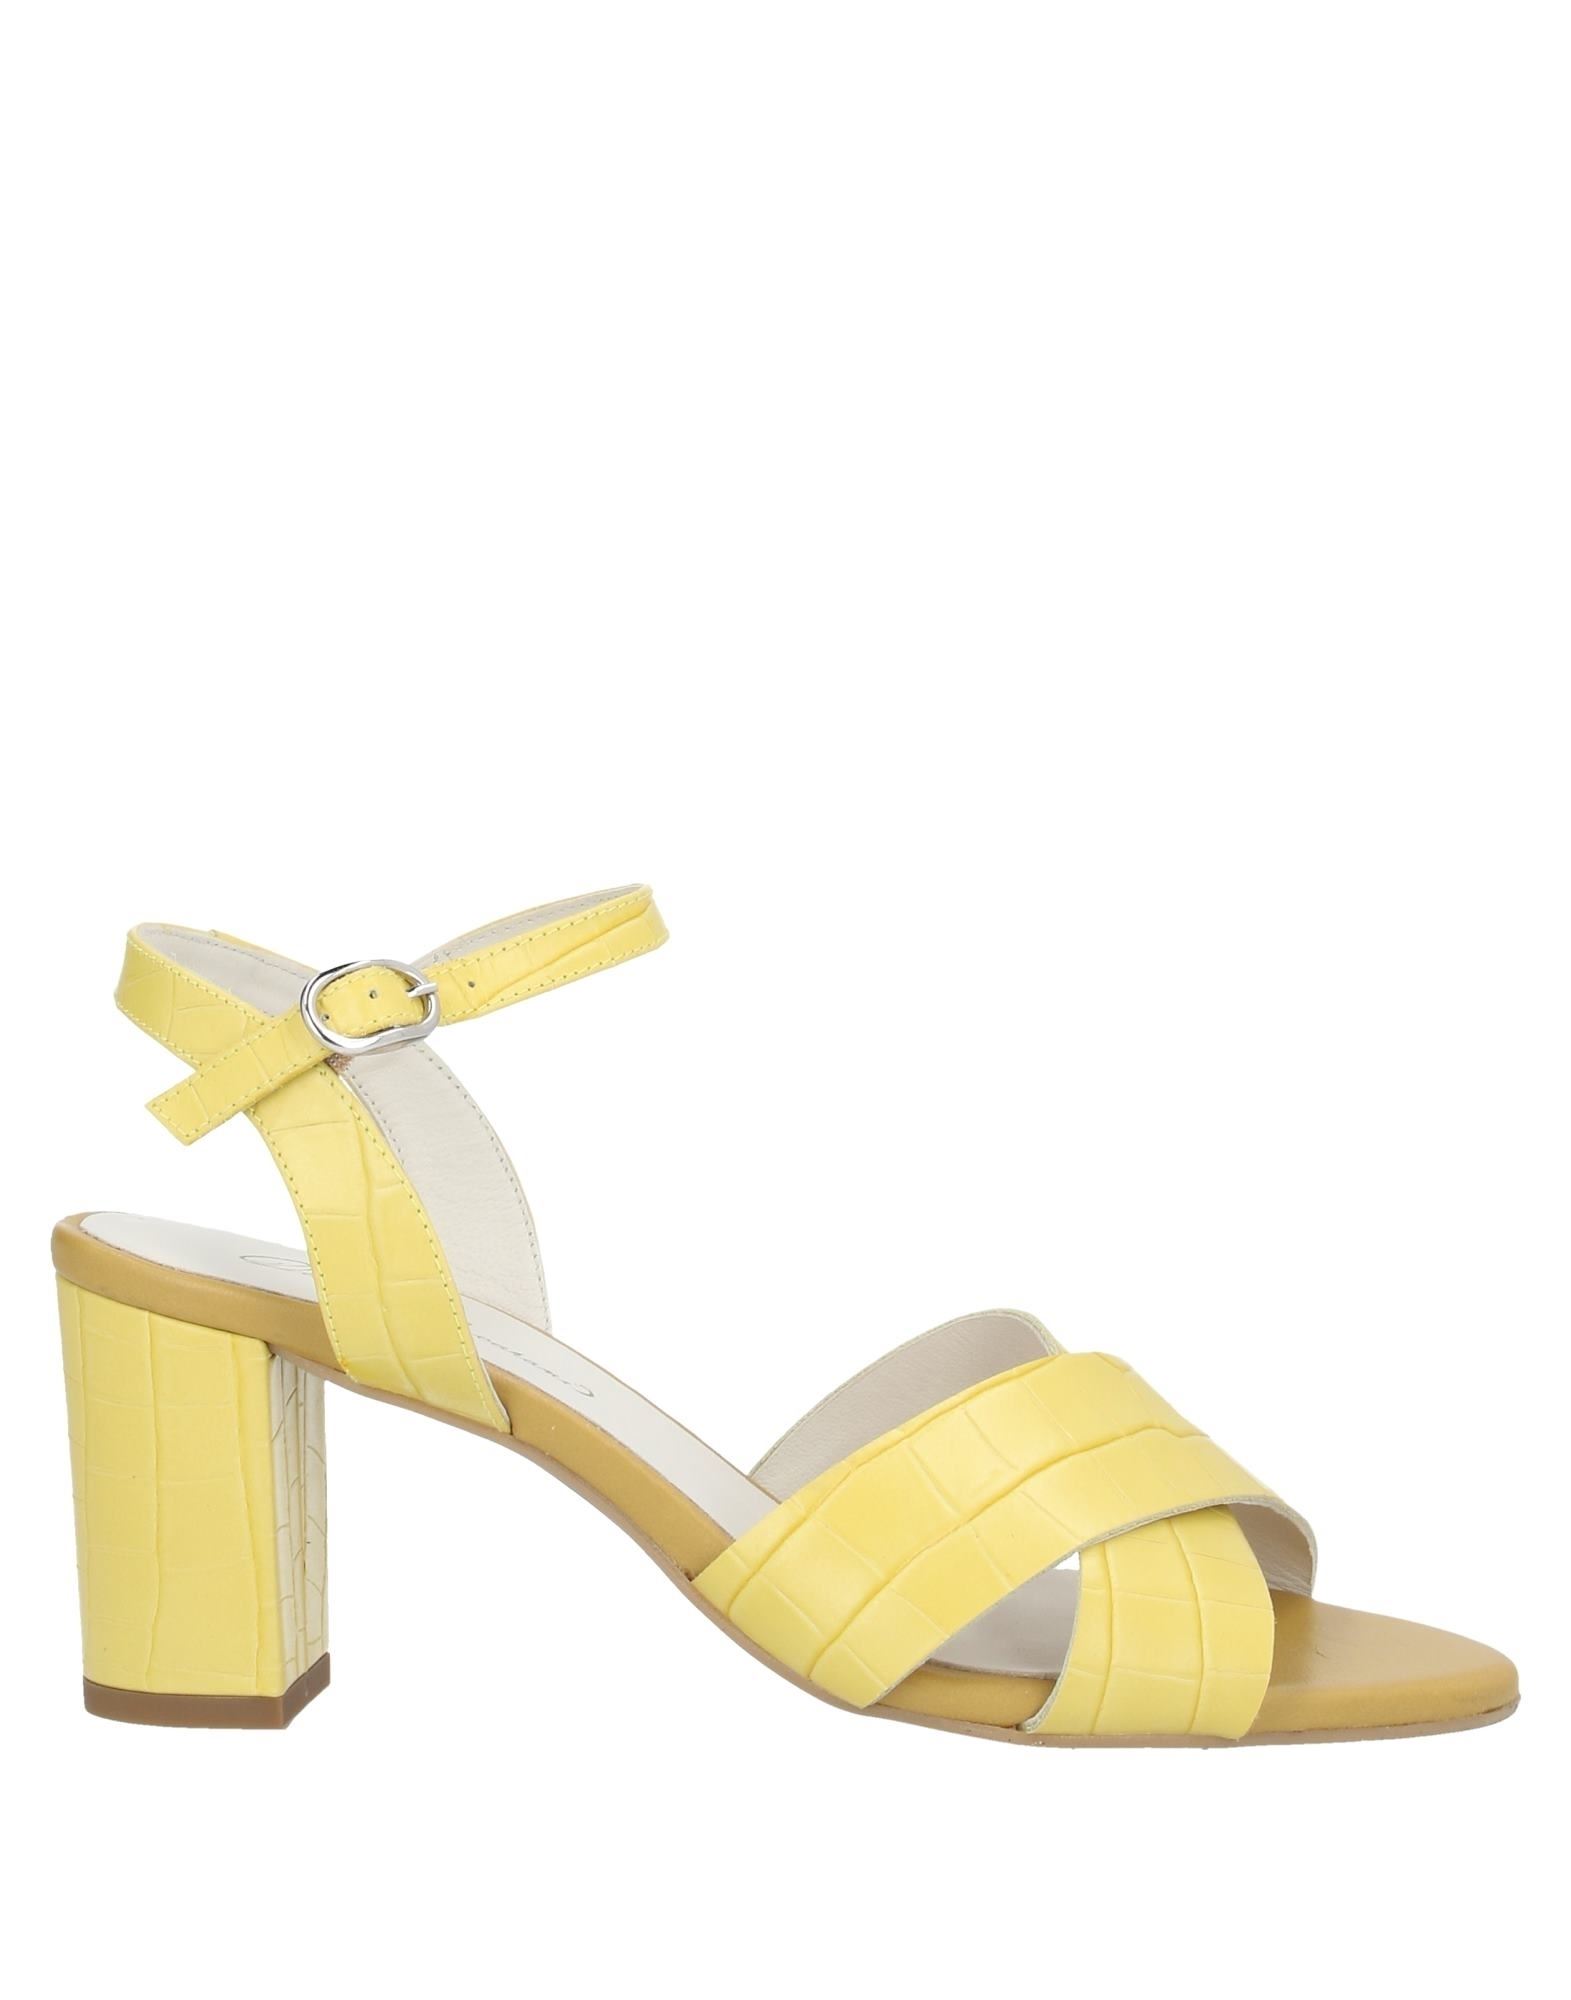 Daniele Ancarani Sandals In Yellow